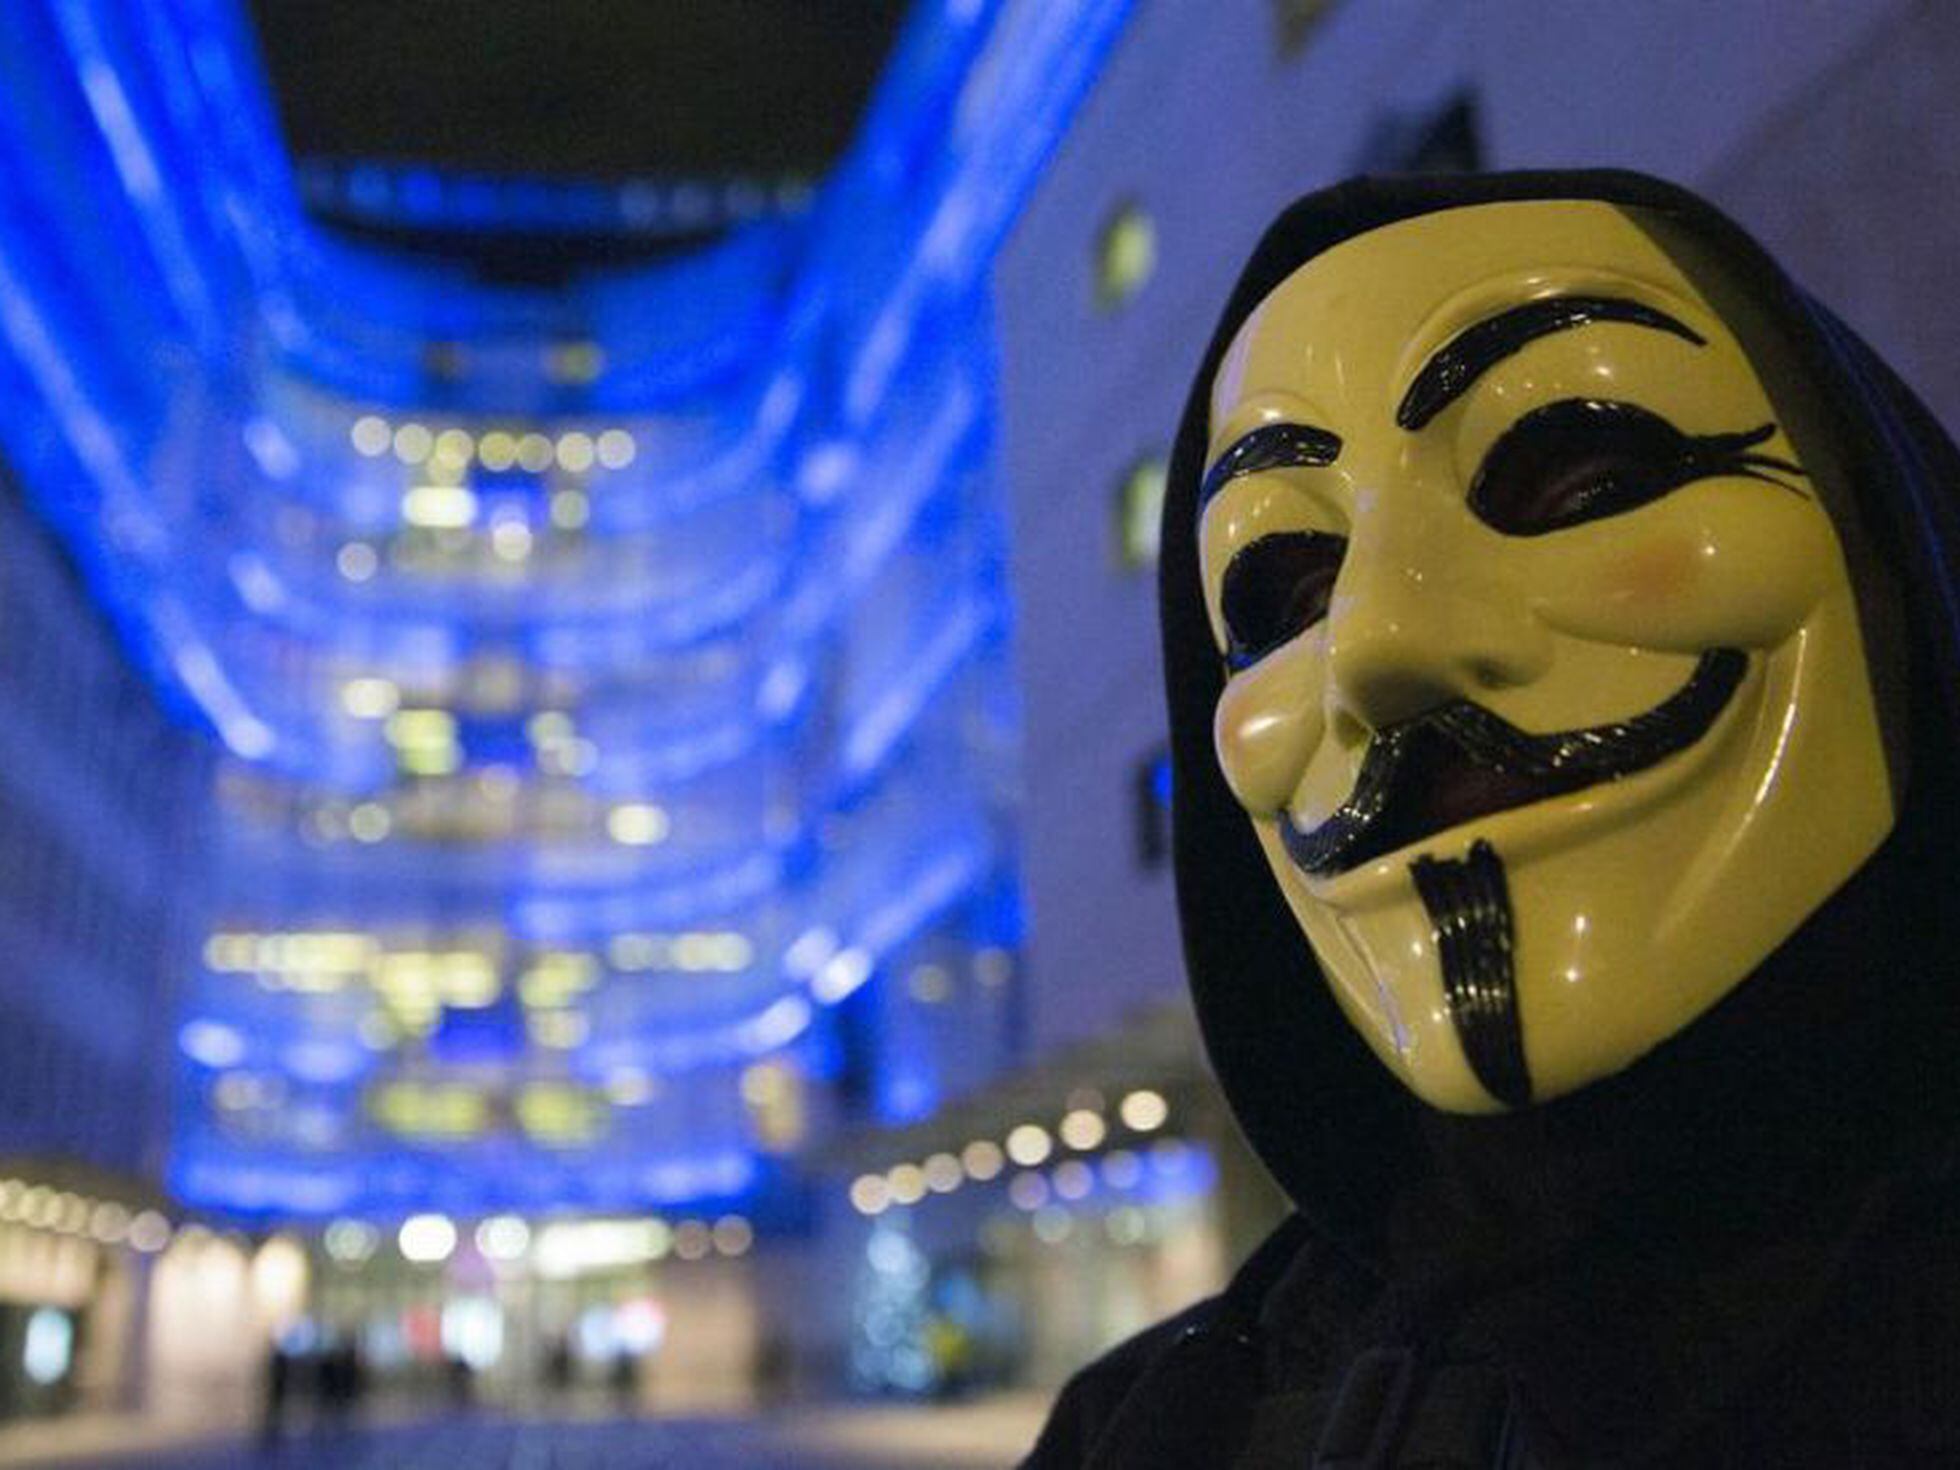 miembro Aniquilar Persona Anonymous: las caras que esconde la máscara | Babelia | EL PAÍS